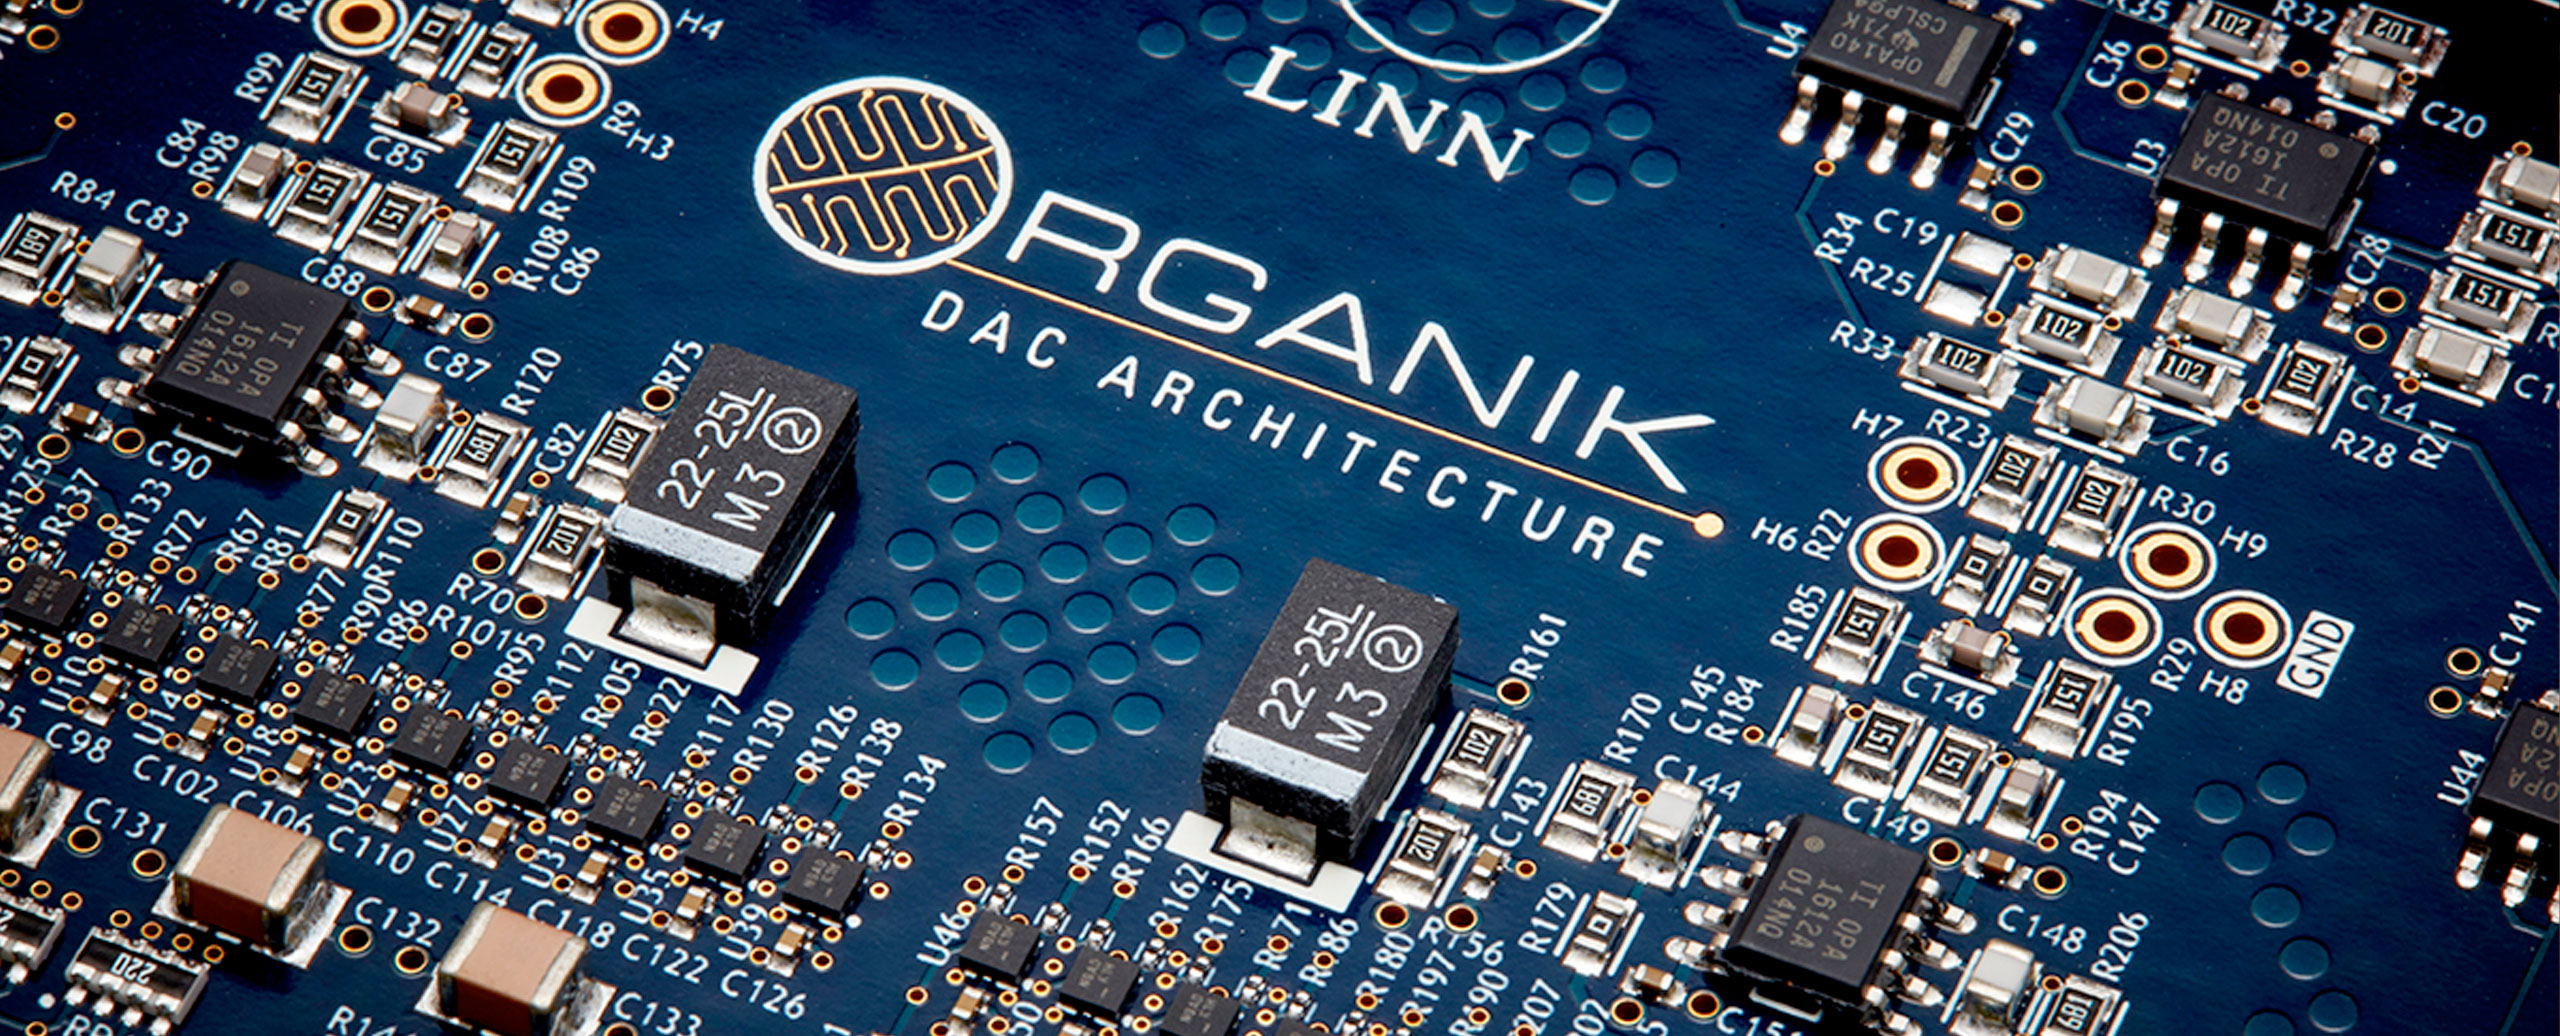 Linn Organik DAC - de eerste volledig in huis ontwikkelde DAC